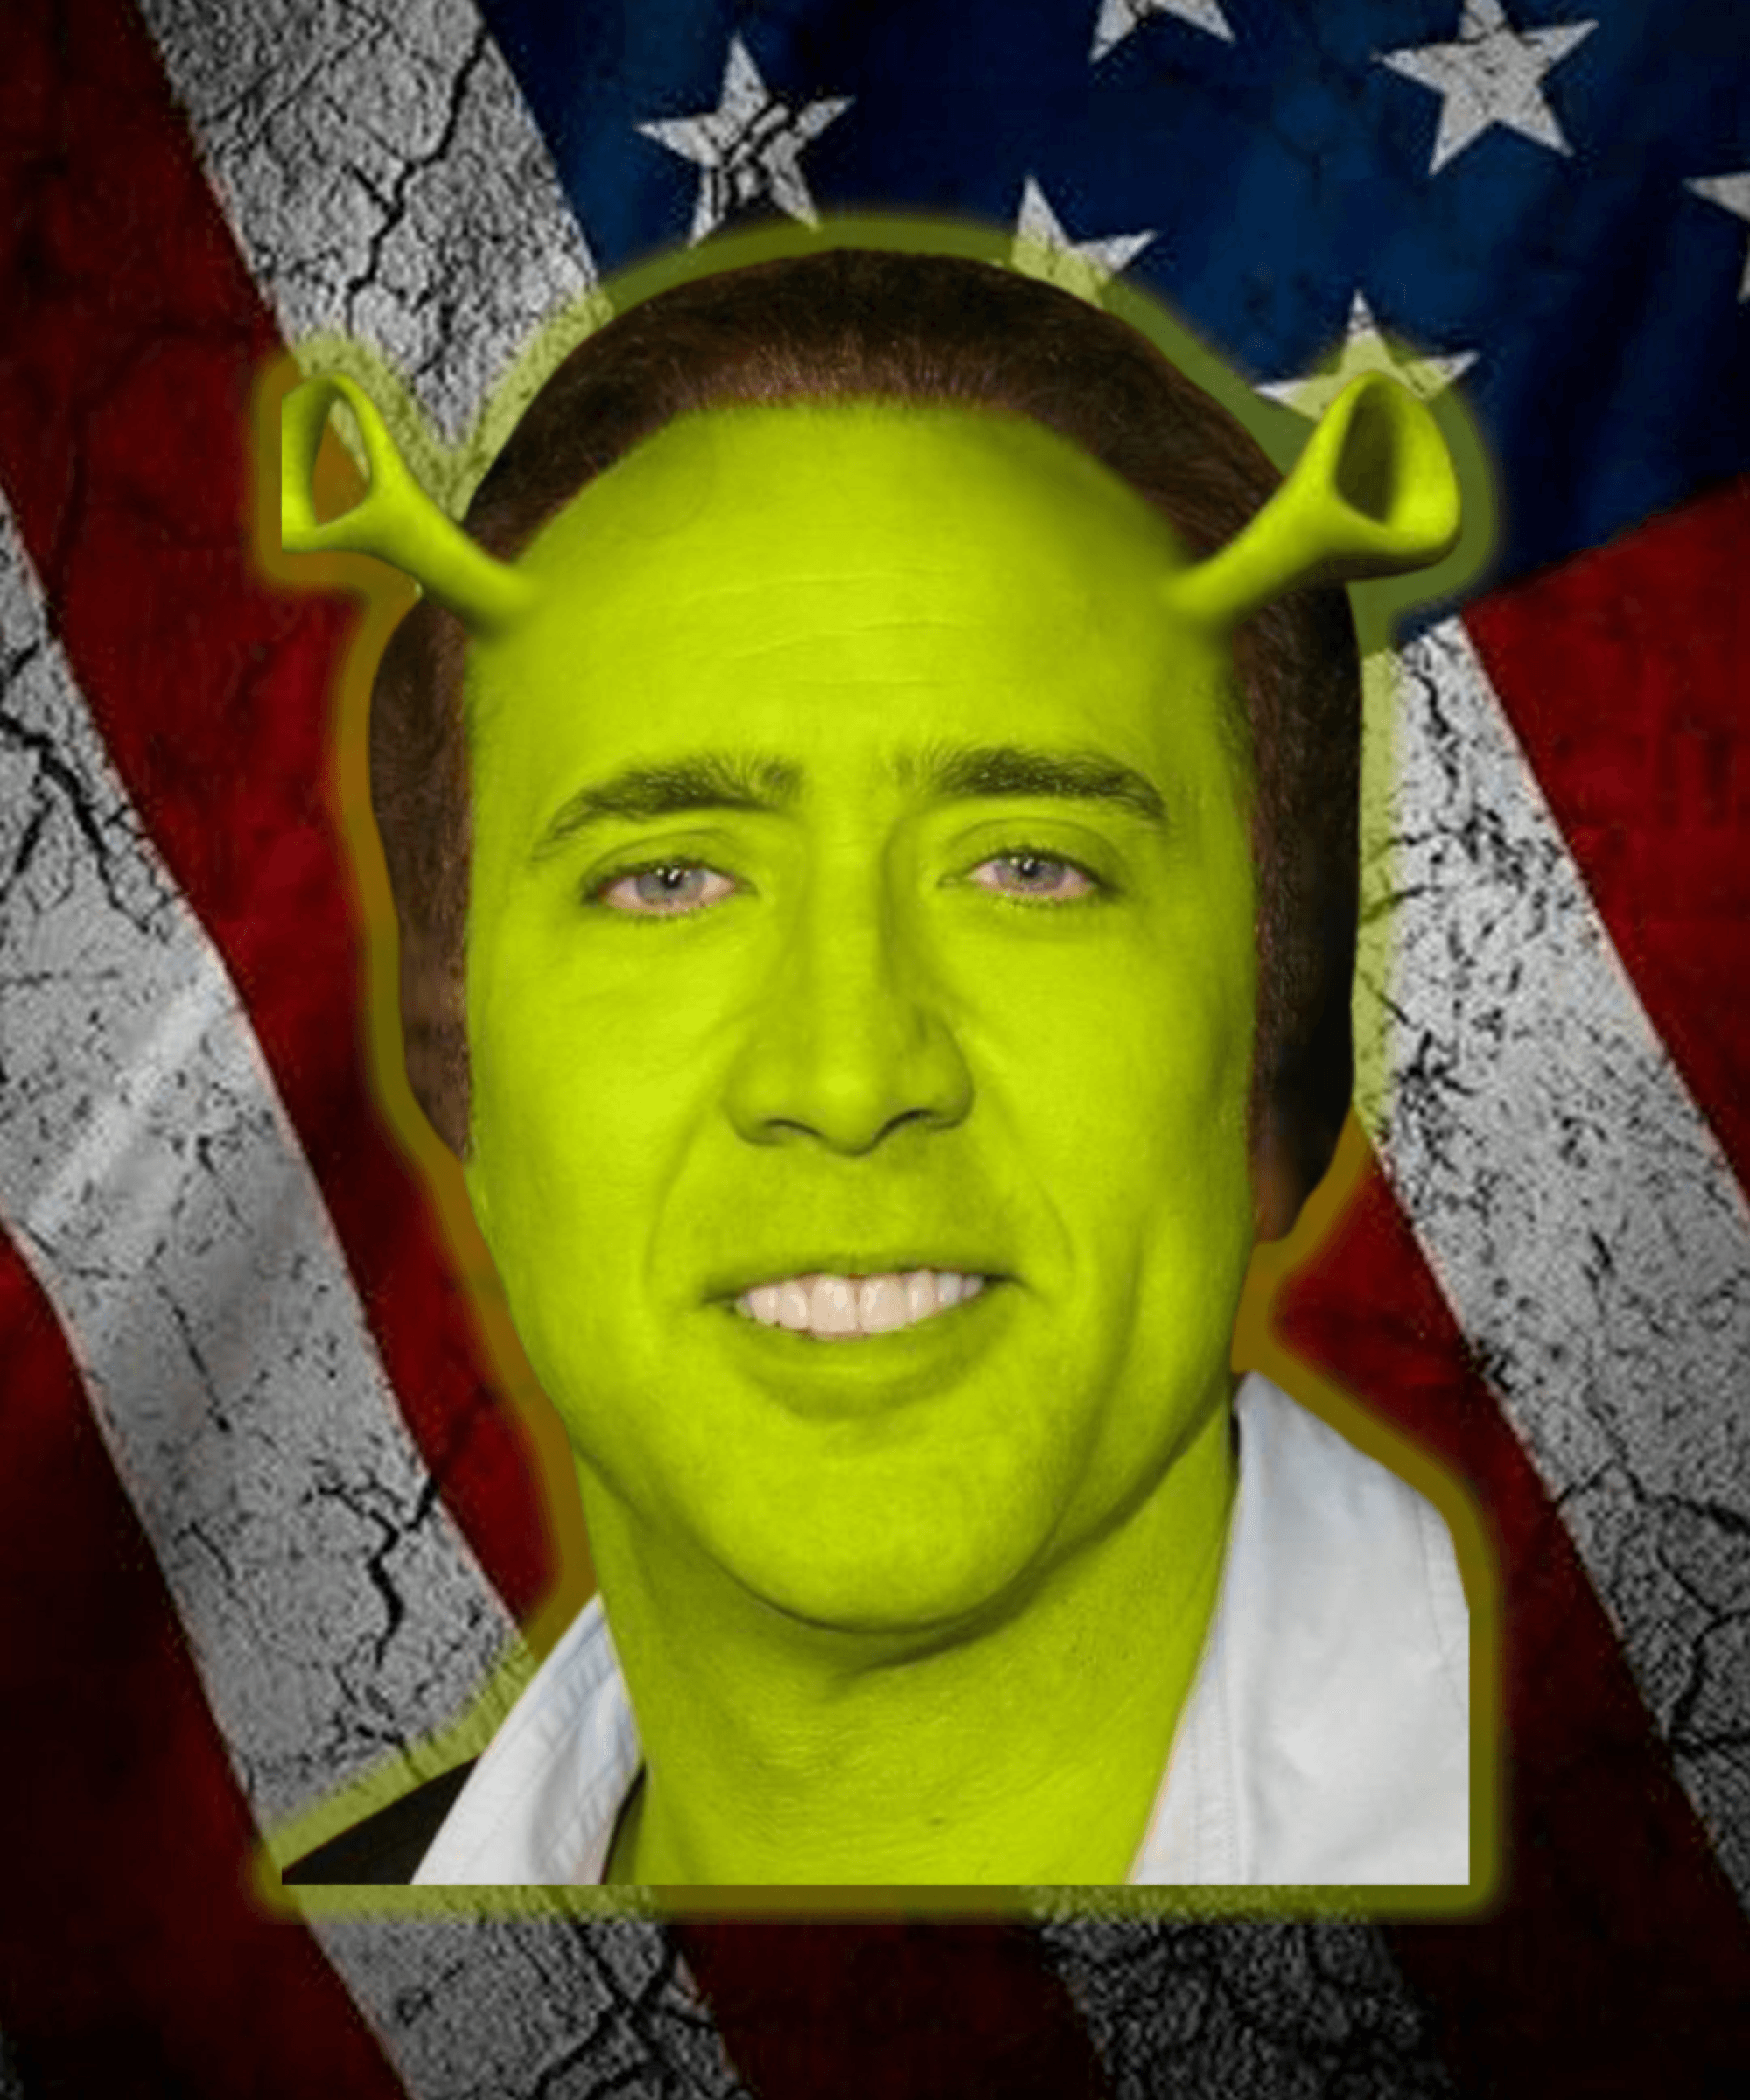 Nicolas Cage as Shrek - Crypto Art Meme - Nicholas Cage